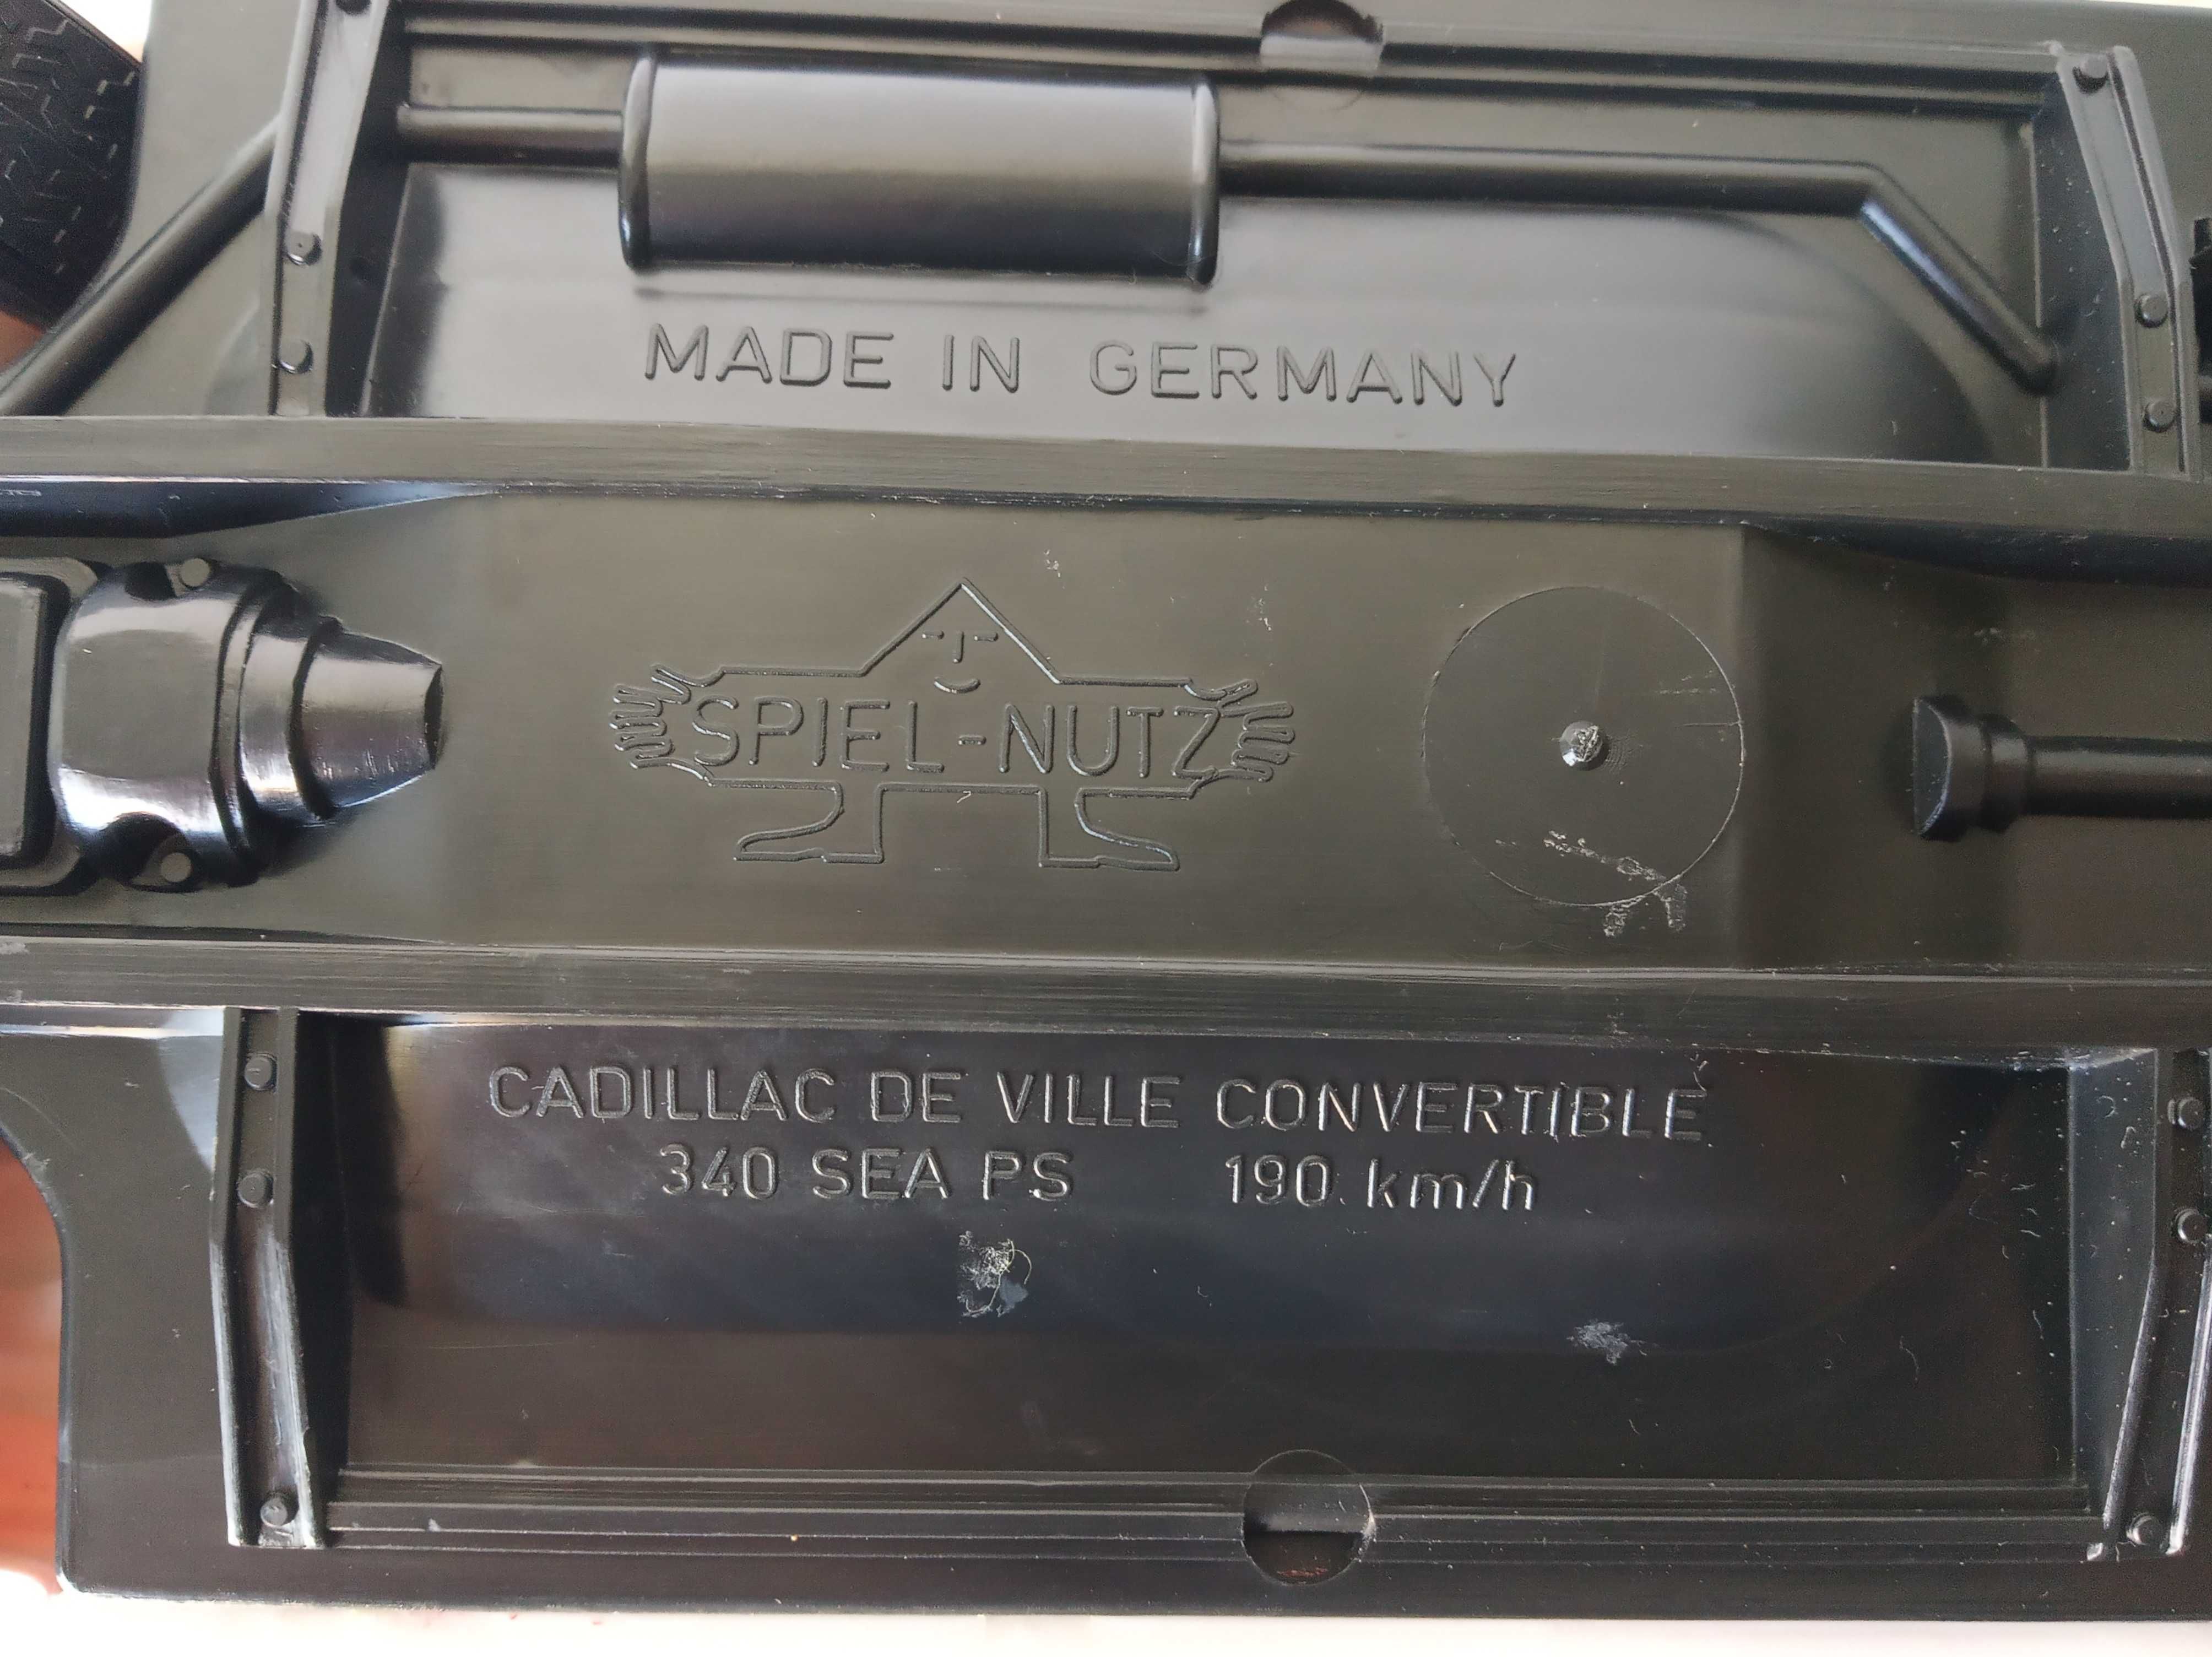 Cadillac De Ville Convertible 1/20 - Spiel-Nutz - Germany